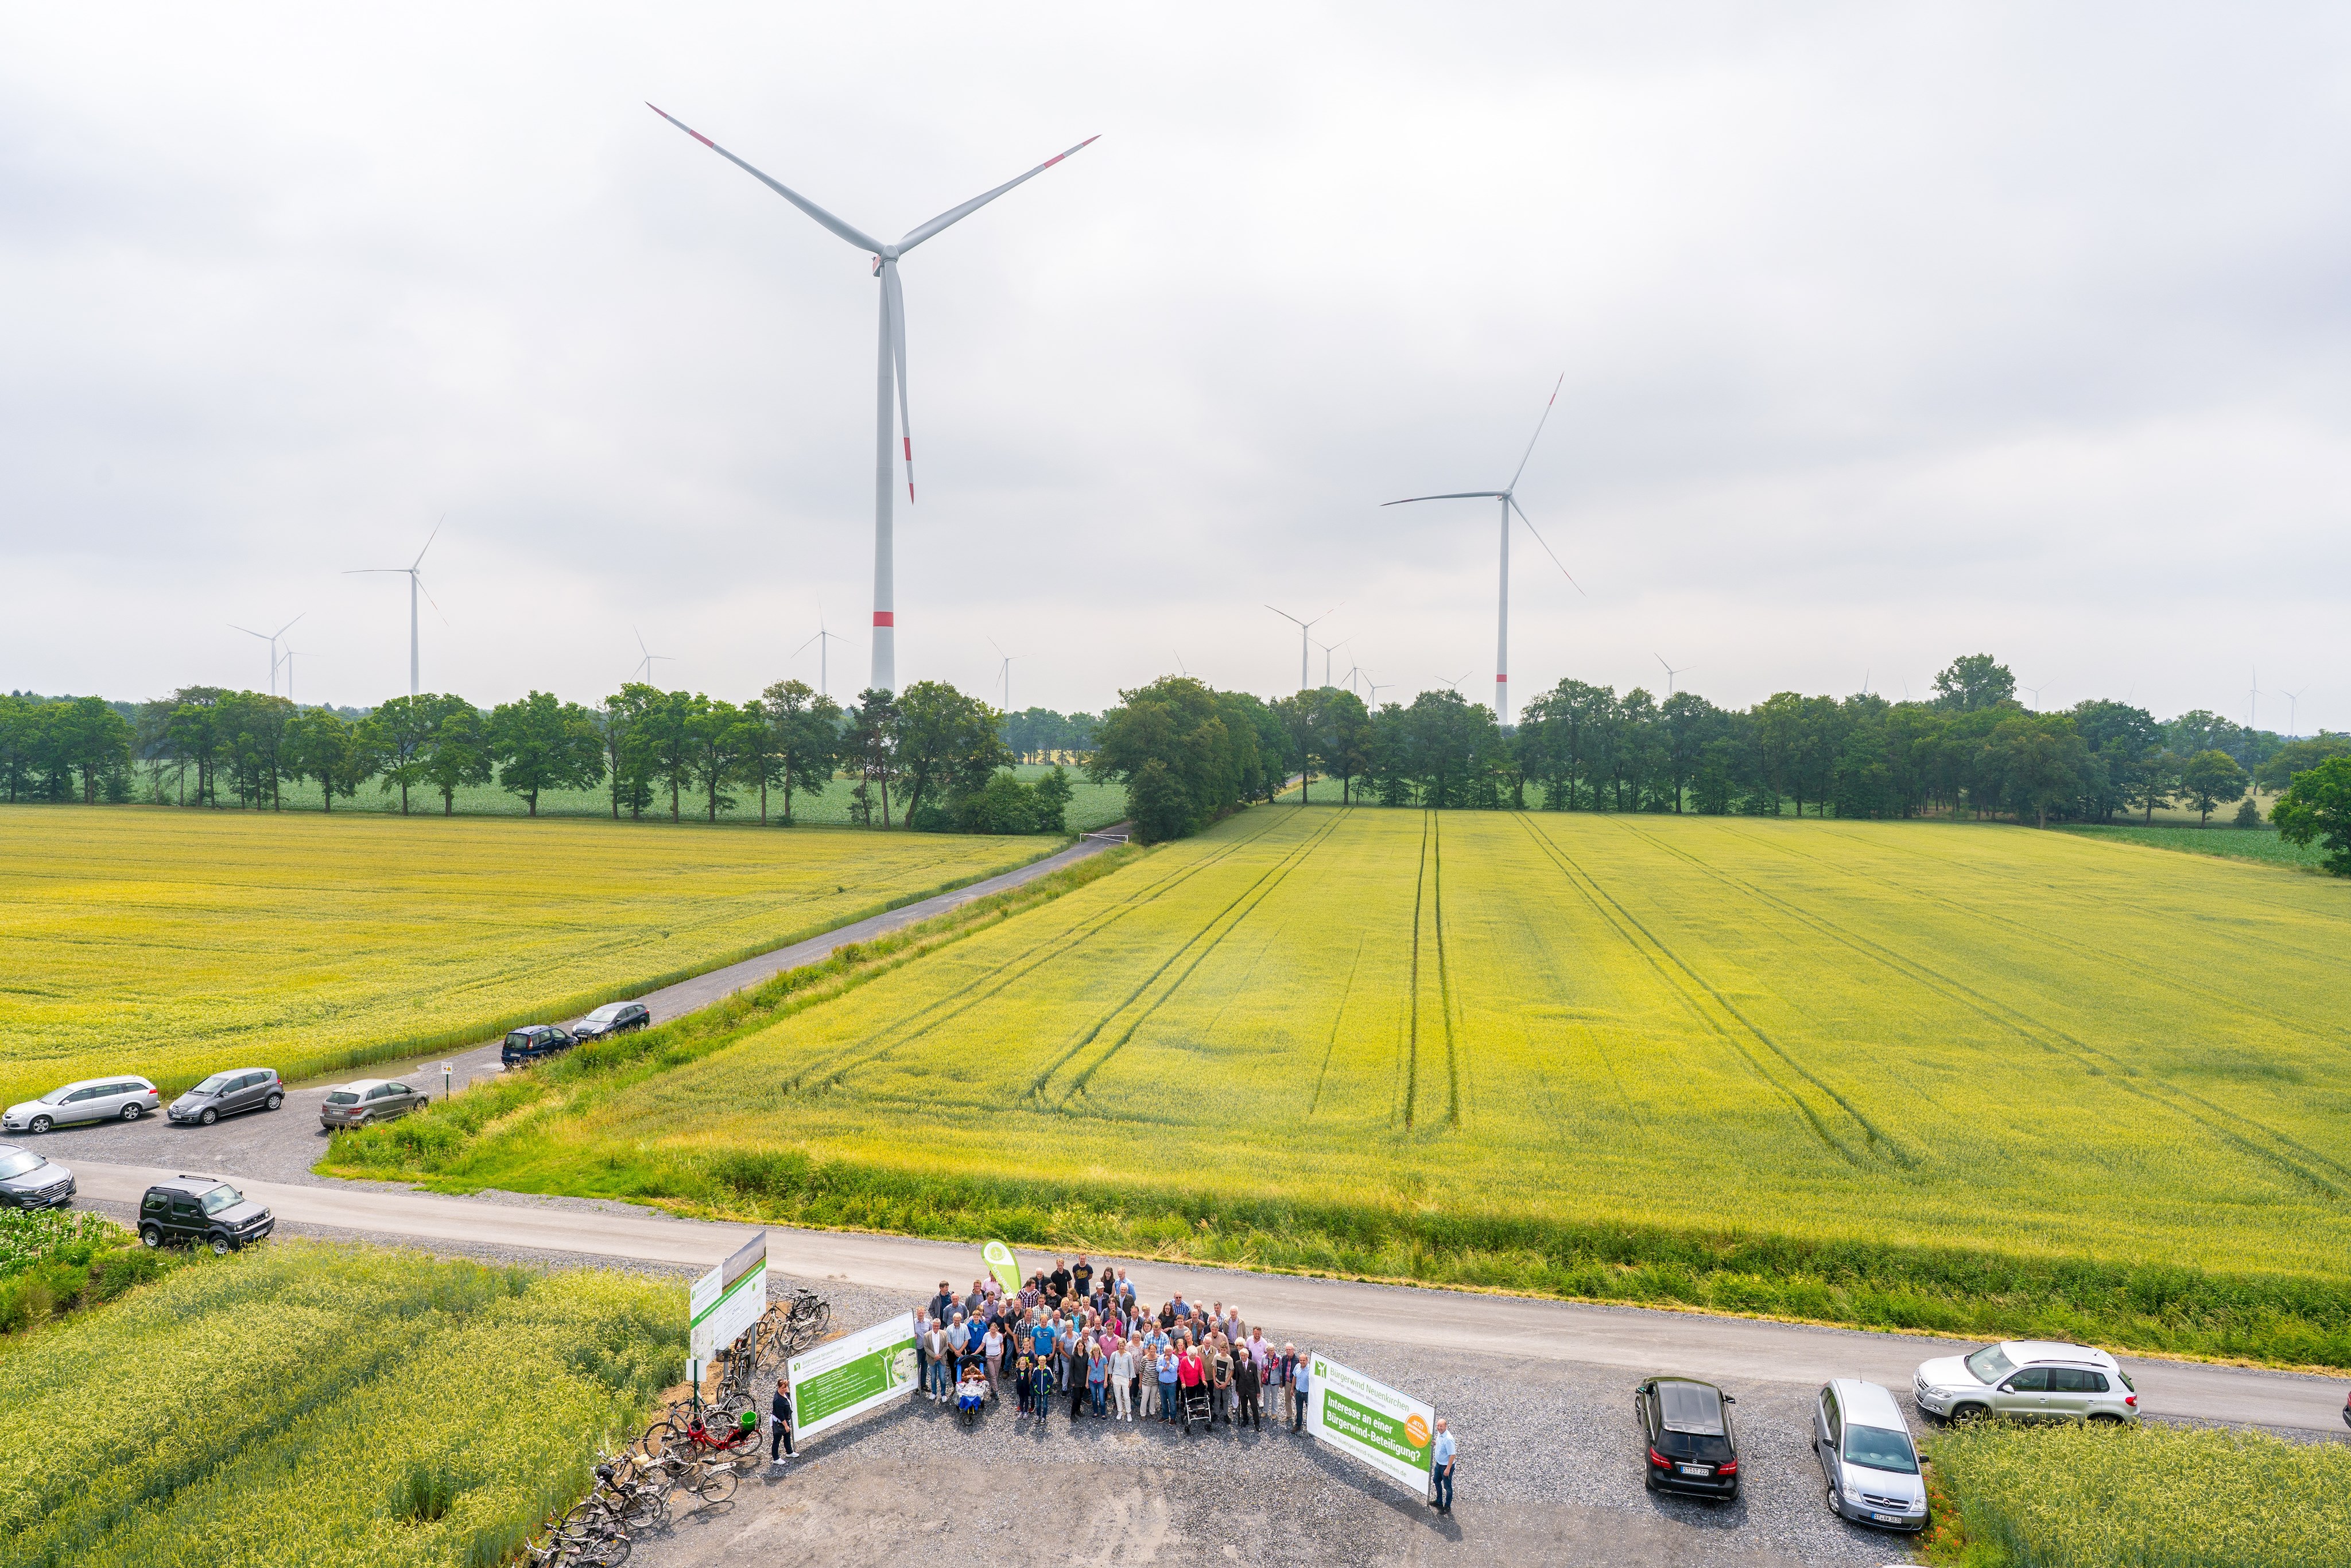 Kreis Steinfurt auf dem Weg zur Klimaneutralität bis 2040: Bürgerwind als zentraler Baustein